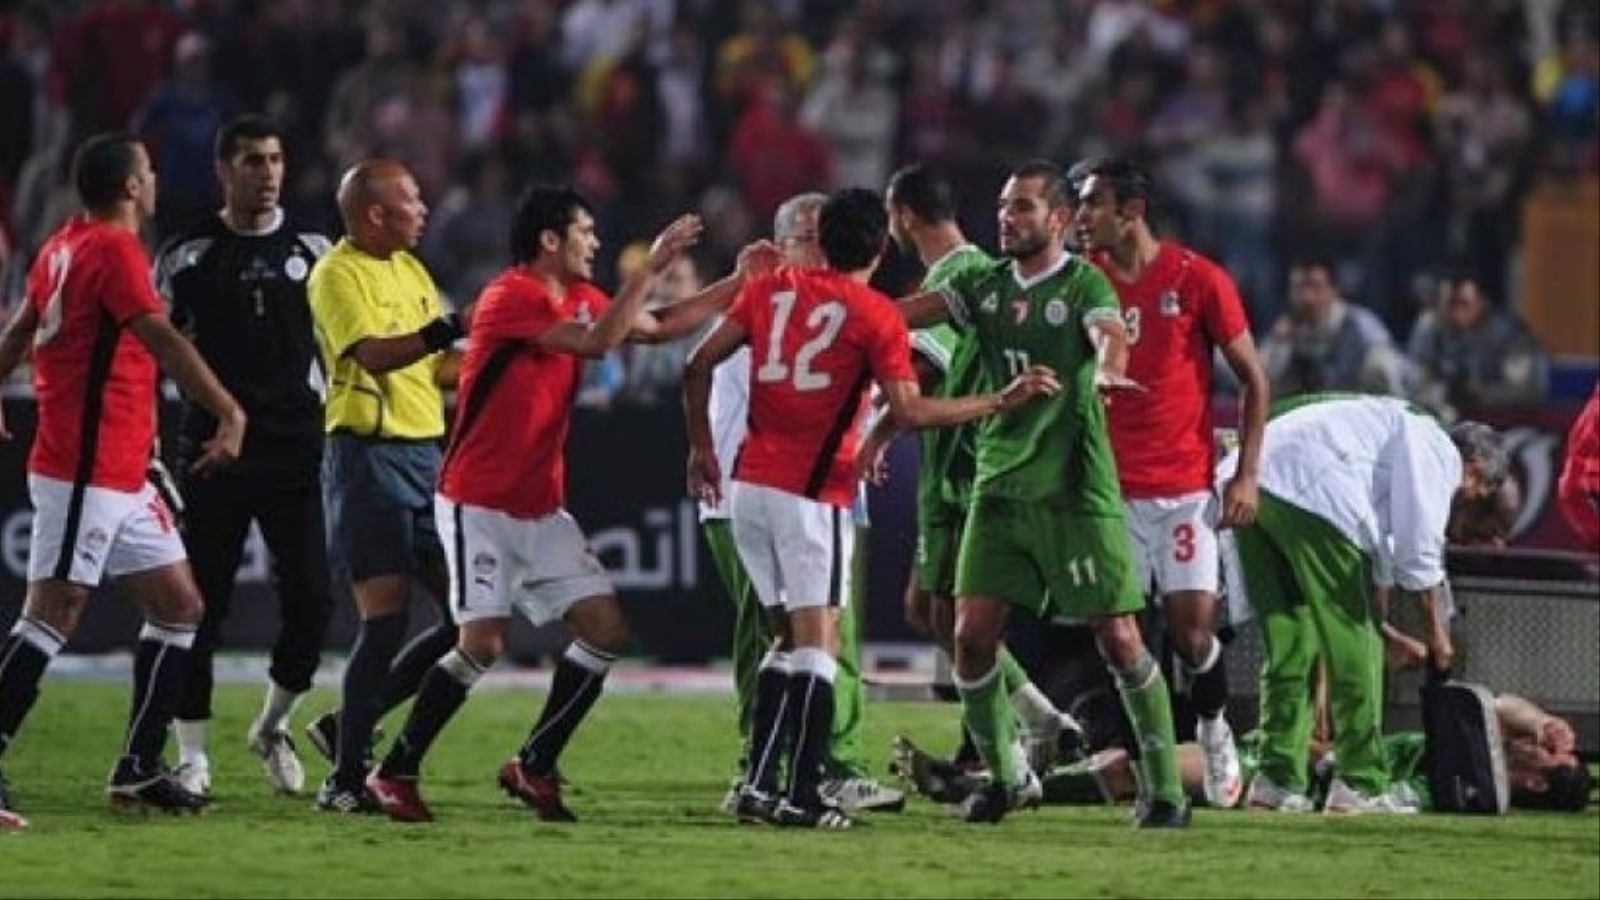 مباريات كرة القدم في أكثر من زمان ومكان عربي صارت مرتعا للنعرات والعصبيات الذميمة، مثلما رأينا في مباراة مصر والجزائر في 2009 على سبيل المثال